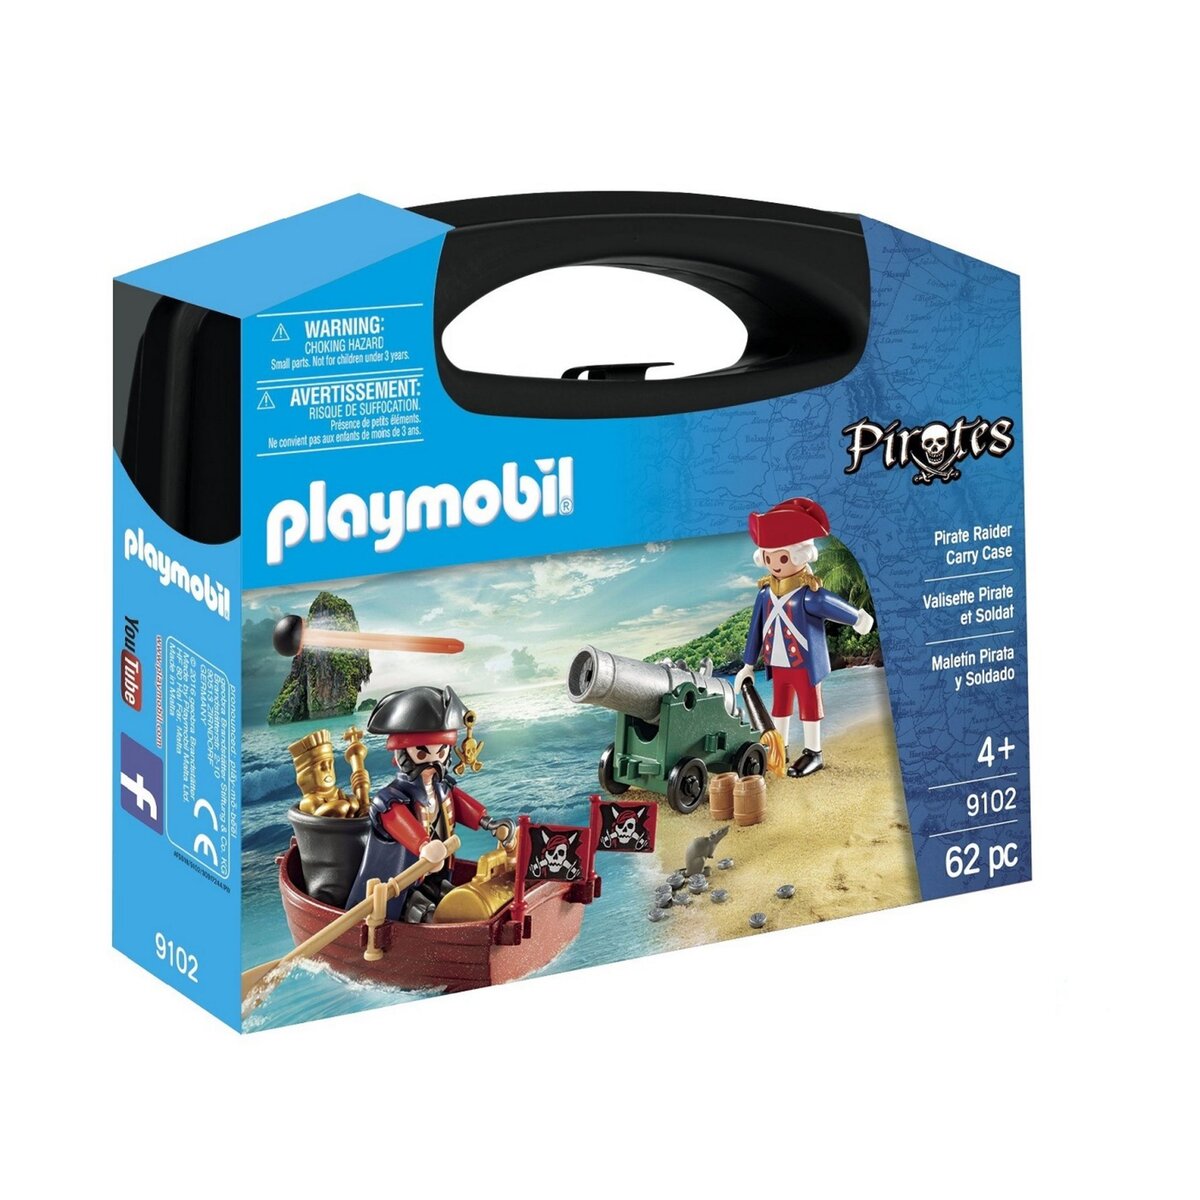 PLAYMOBIL 9102 Pirates - Valisette Pirate et Soldat 